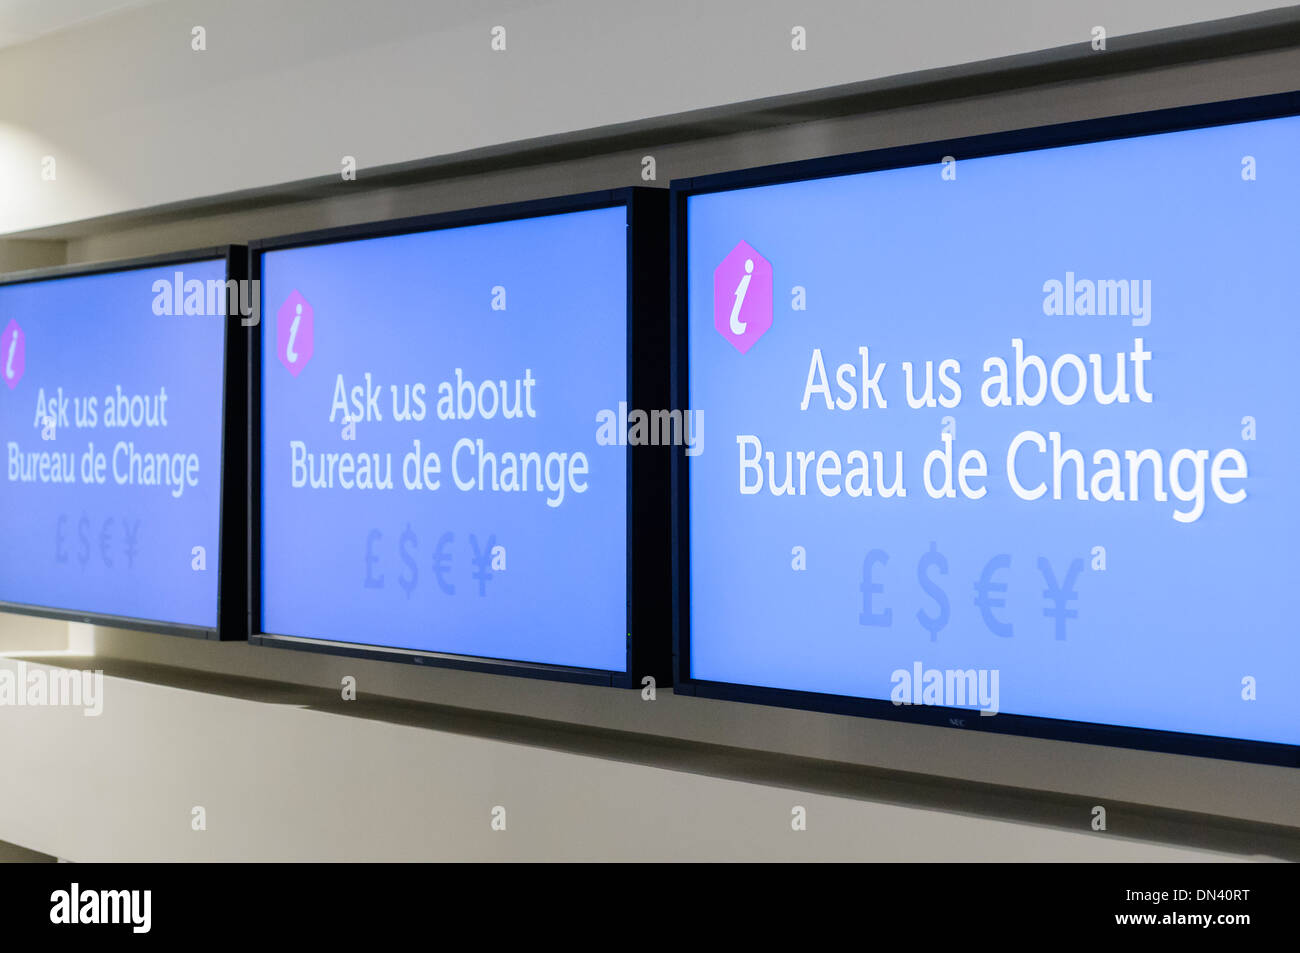 Bildschirme in eine Touristeninformation Besucher Bureau de Change Einrichtungen Fragen Fragen Stockfoto